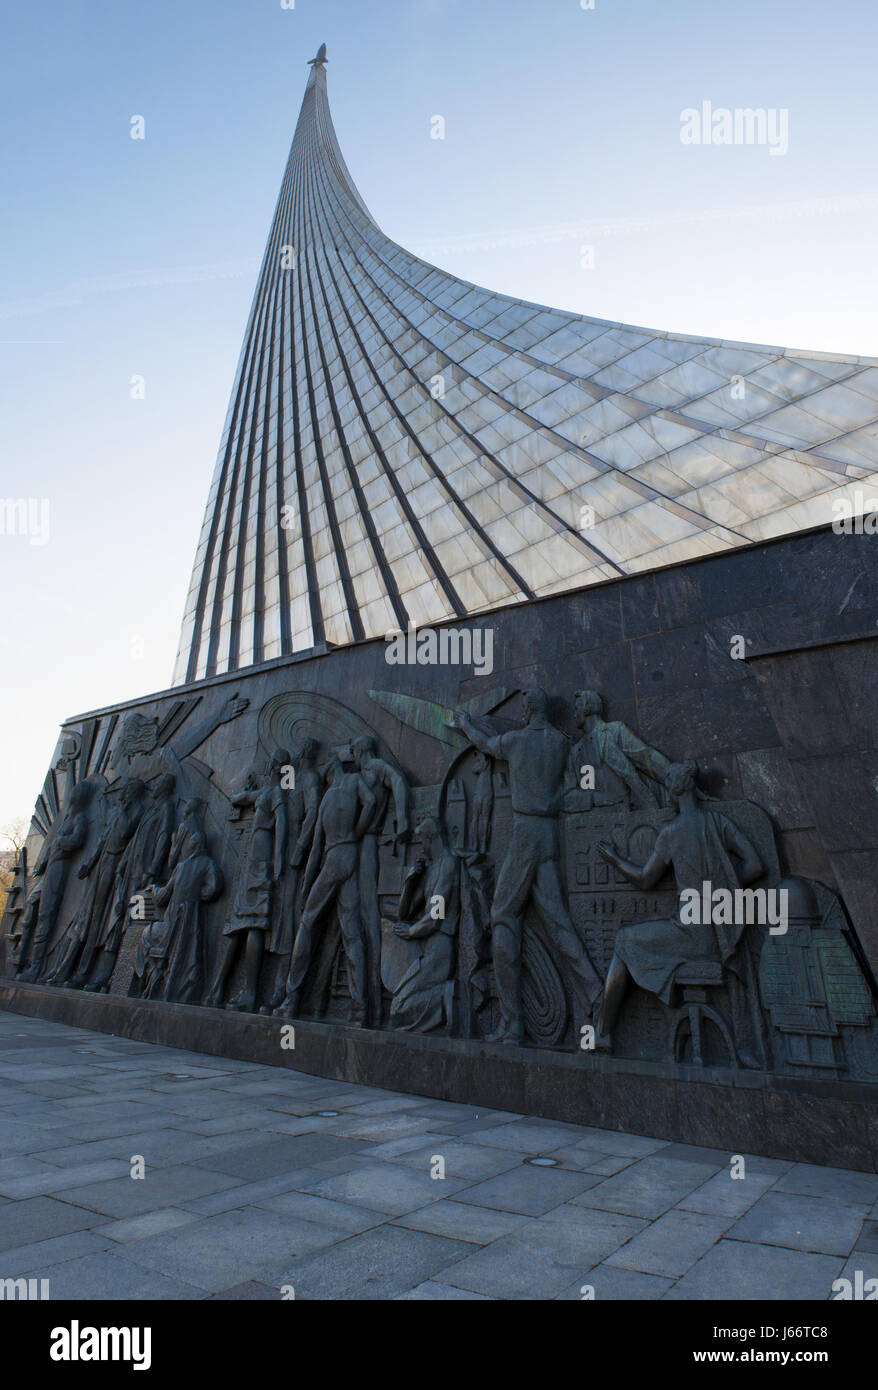 Moscou, Russie : vue sur le Monument des conquérants de l'espace, construit en 1964 pour célébrer les réalisations du peuple soviétique dans l'exploration de l'espace Banque D'Images